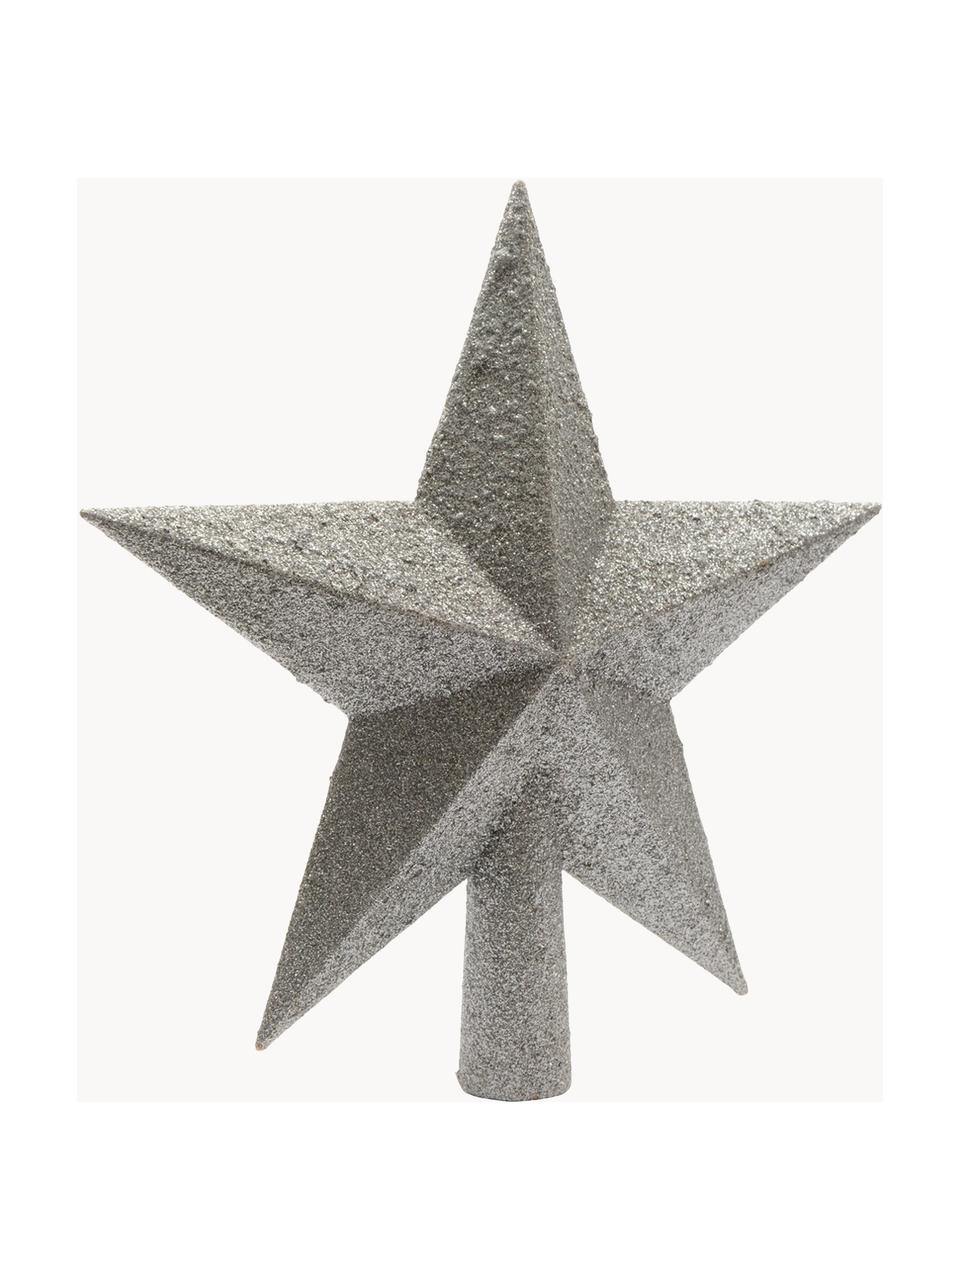 Nerozbitná špice na vánoční stromeček Morning Star, V 19 cm, Umělá hmota, třpytky, Stříbrná, V 19 cm